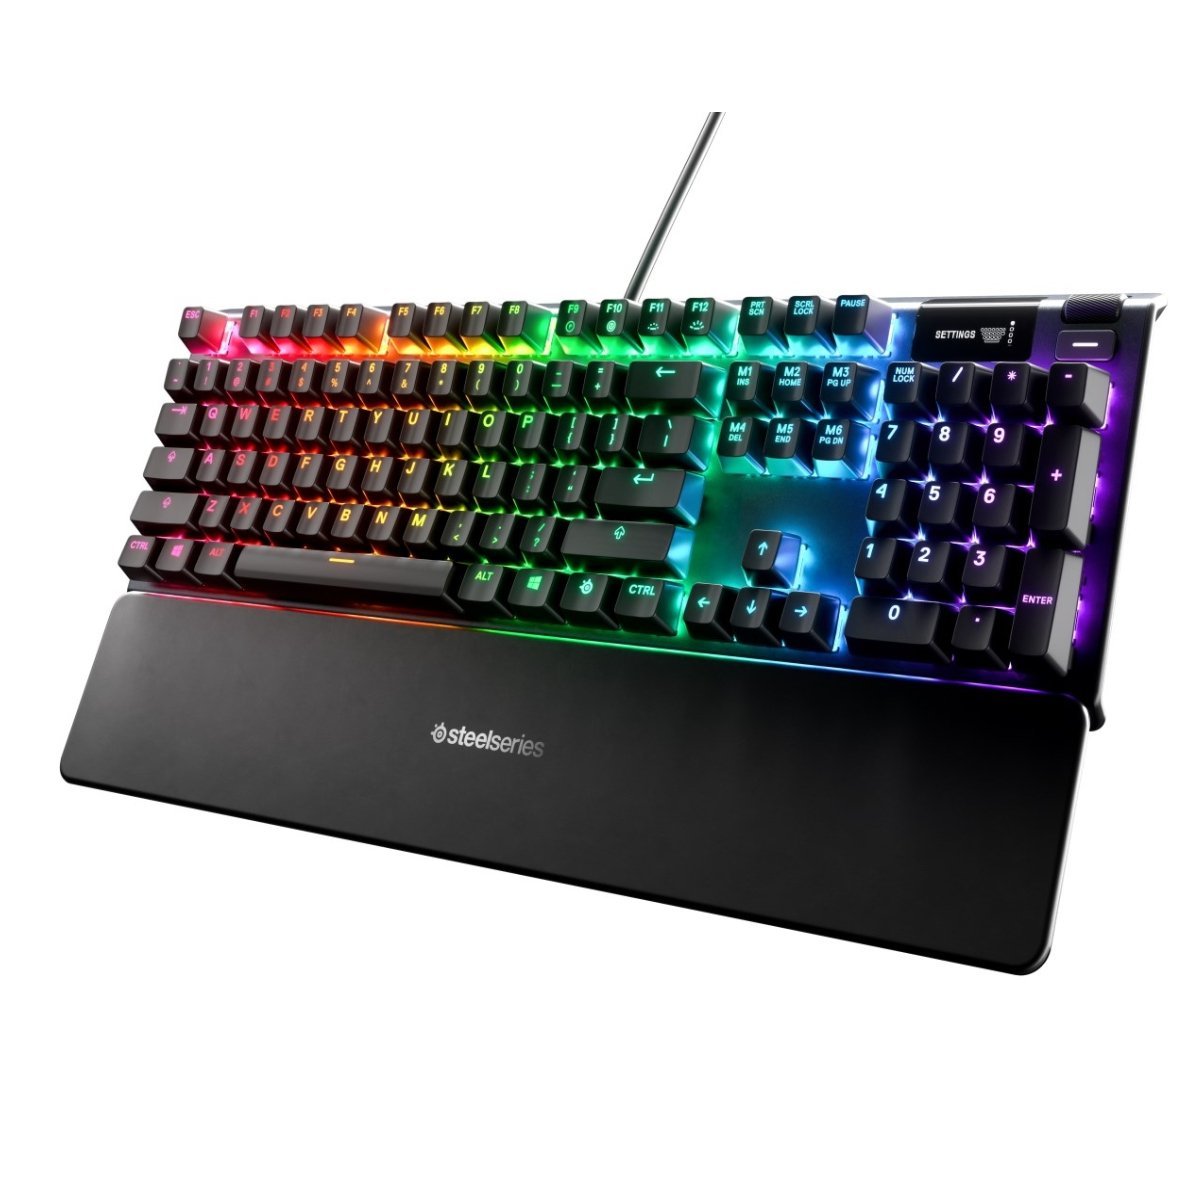 SteelSeries Apex 5 Hybrid RGB Mechanical Gaming Keyboard - Store 974 | ستور ٩٧٤